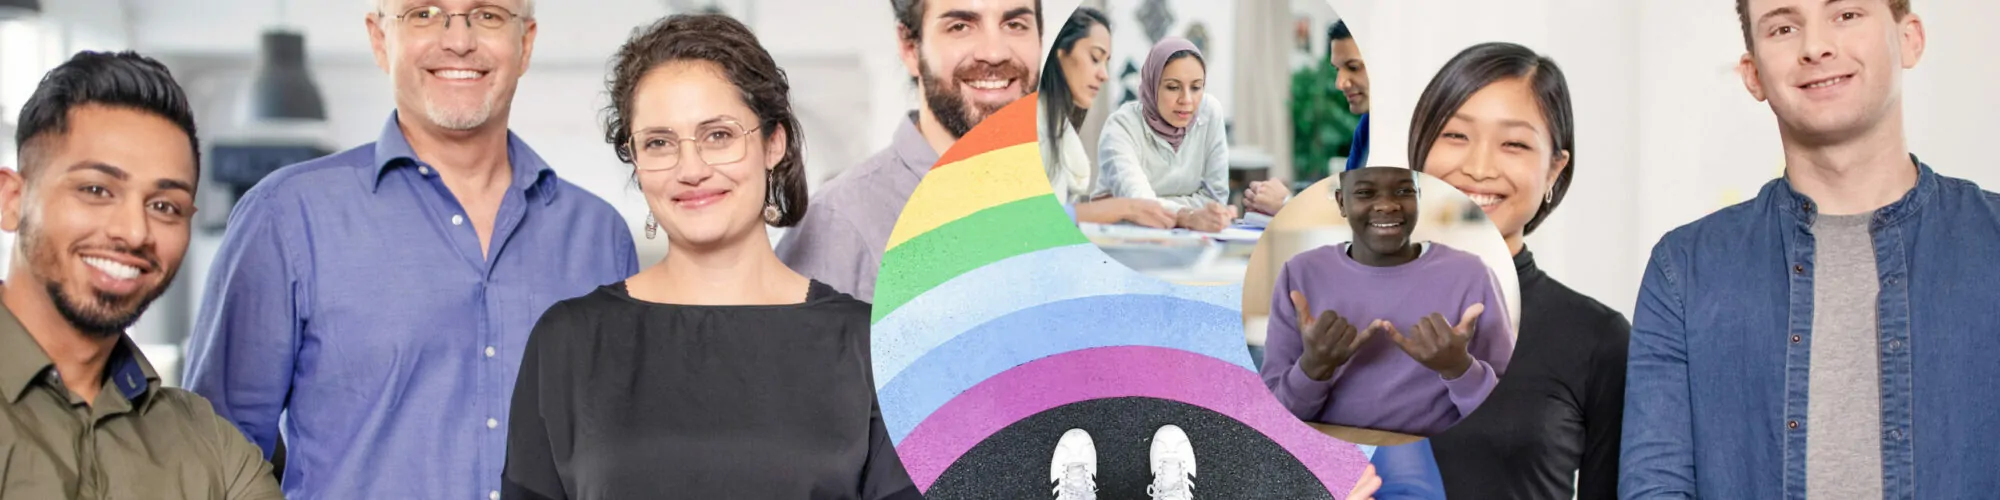 Logotipo pride valantic com cores de arco-iris – Diversidade & Inclusão na valantic